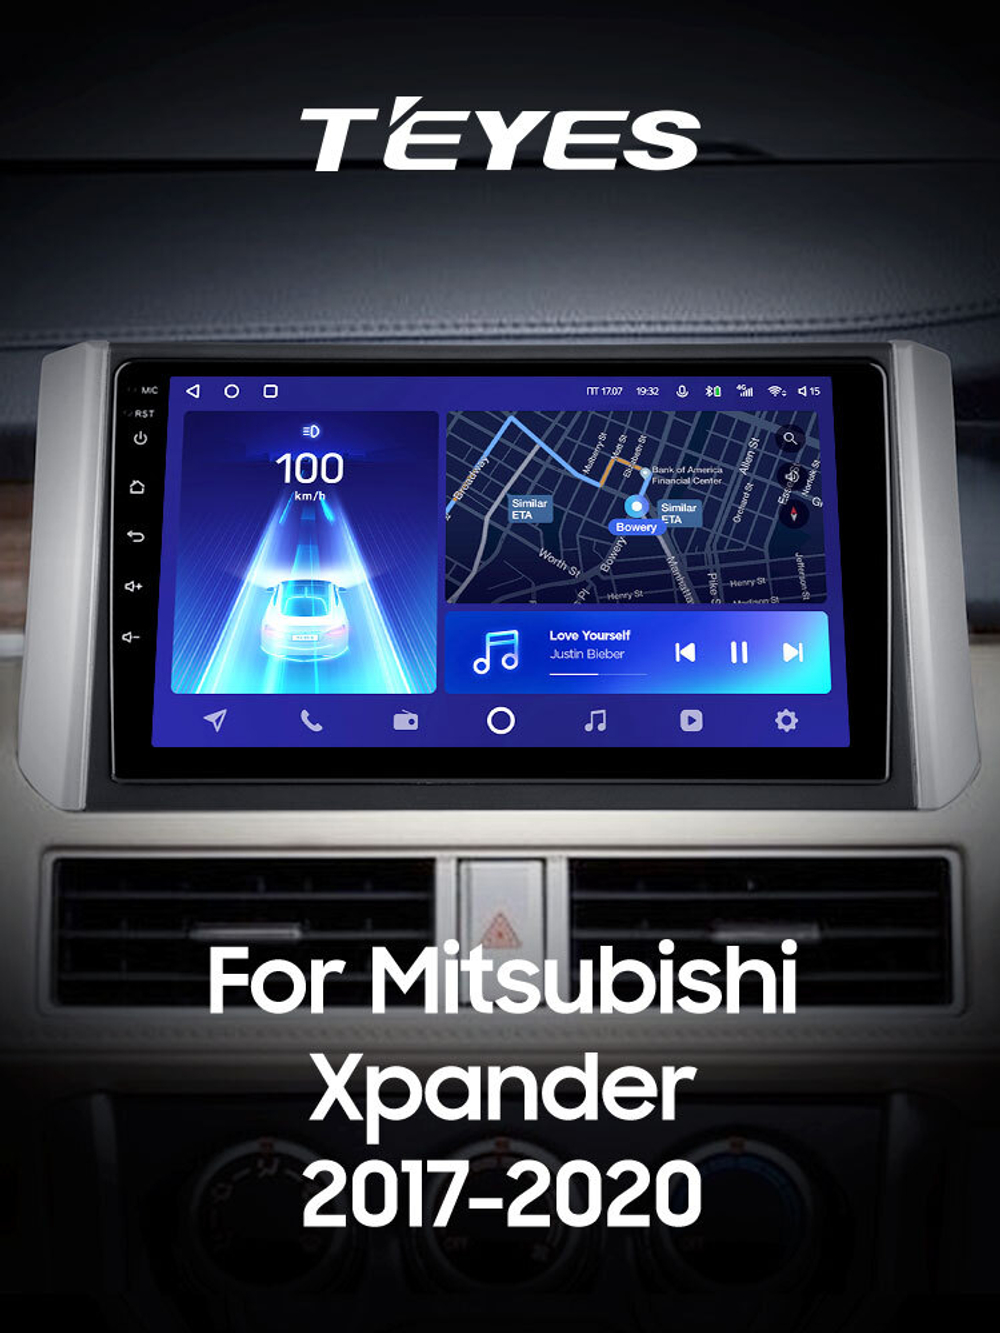 Teyes CC2 Plus 9" для Mitsubishi Xpander 2017-2020